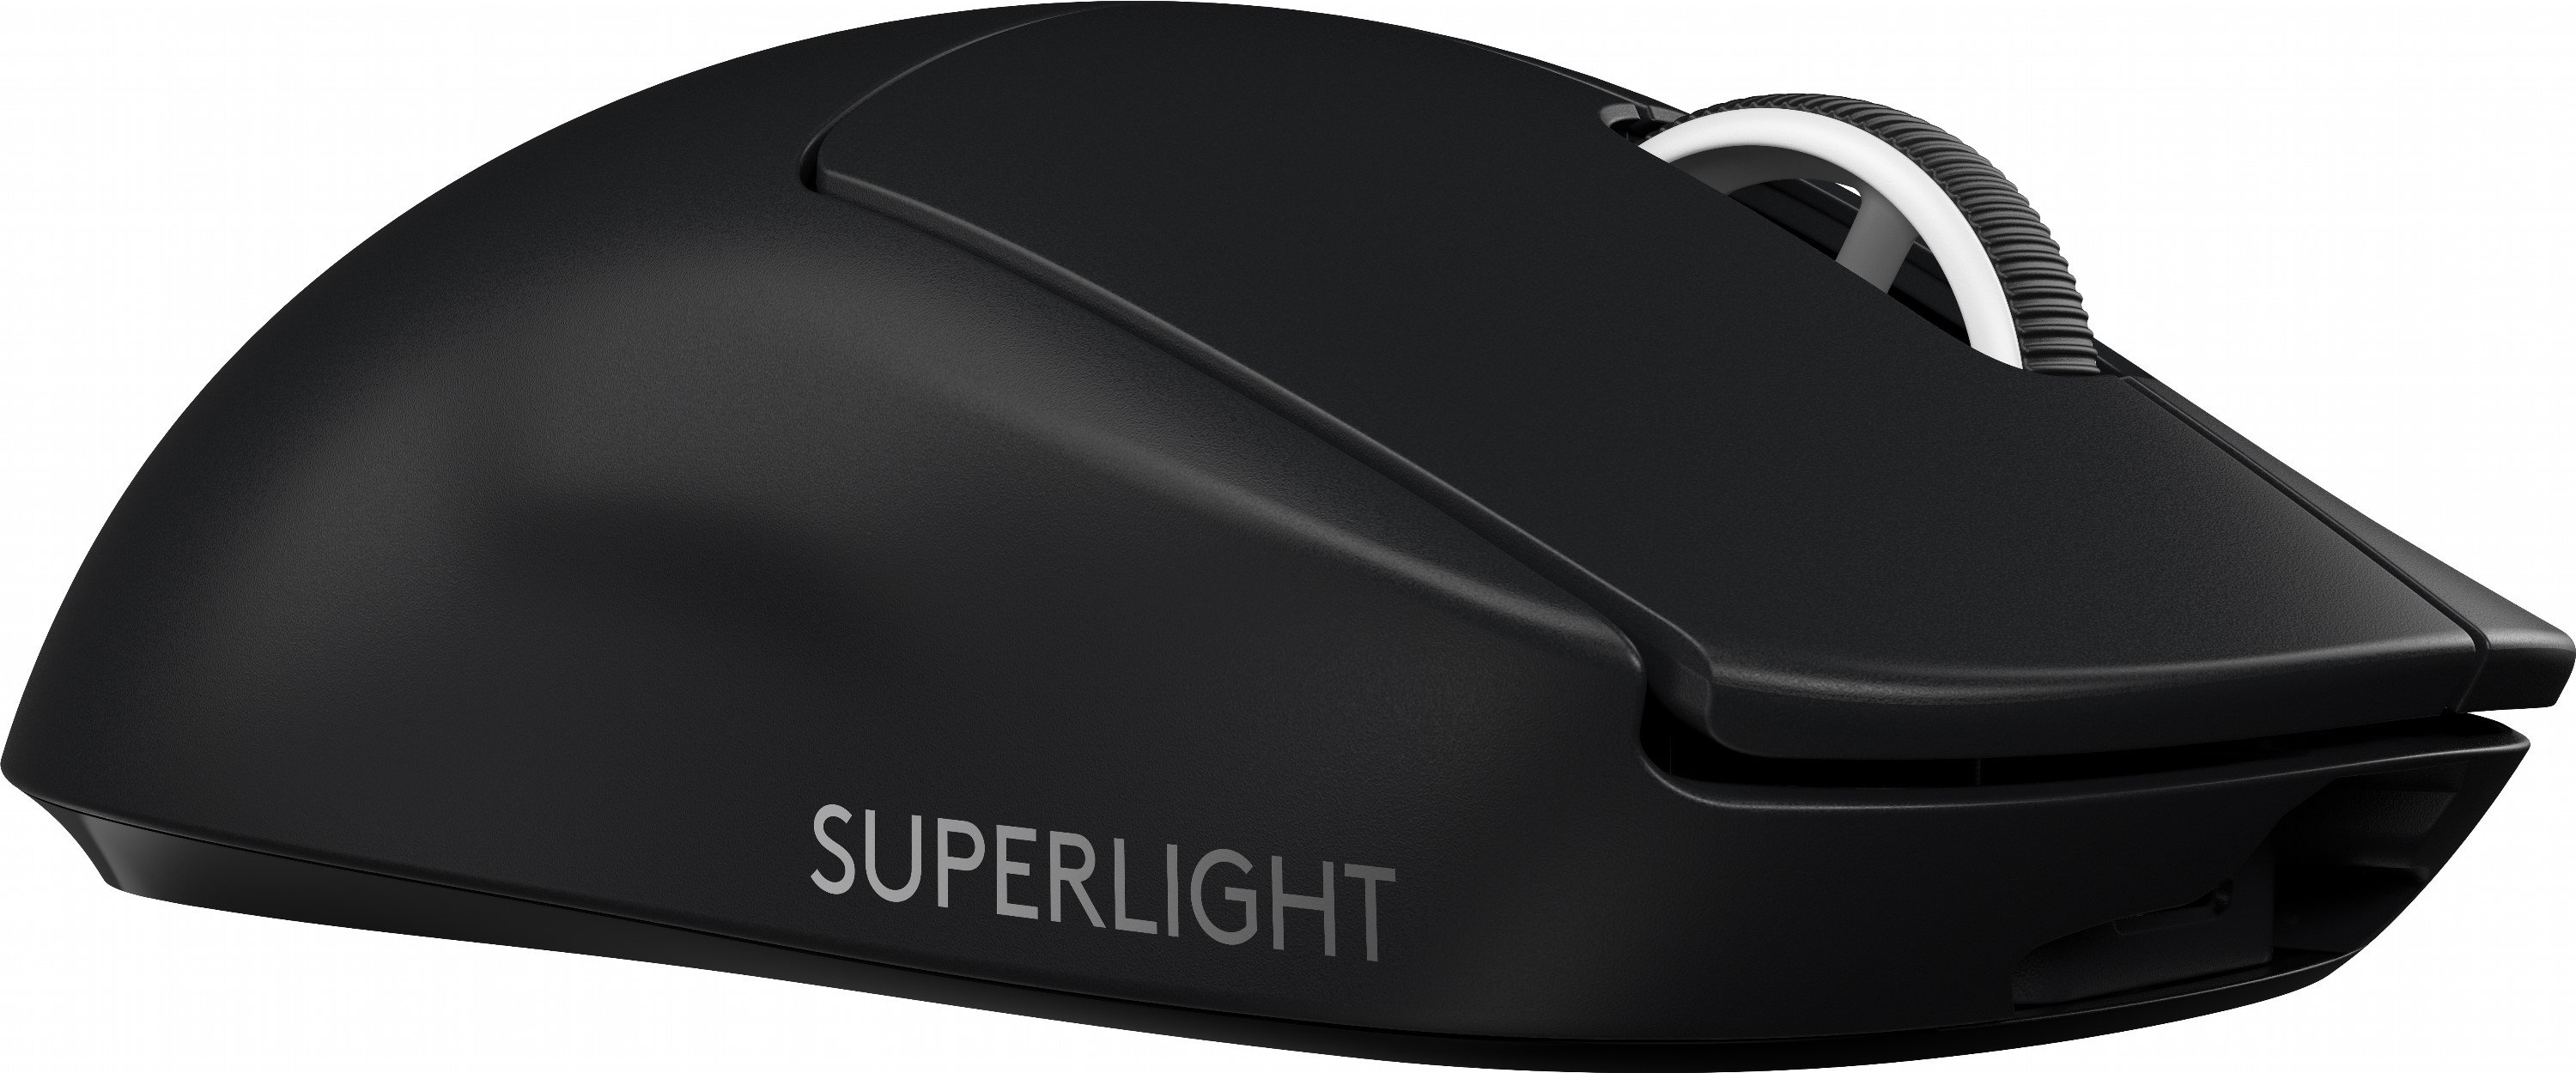 Игровая мышь logitech superlight. Logitech g Pro x Superlight. Logitech g Pro Wireless Superlight. Мышь Logitech 910-005880. Мышь Logitech g Pro x Superlight.